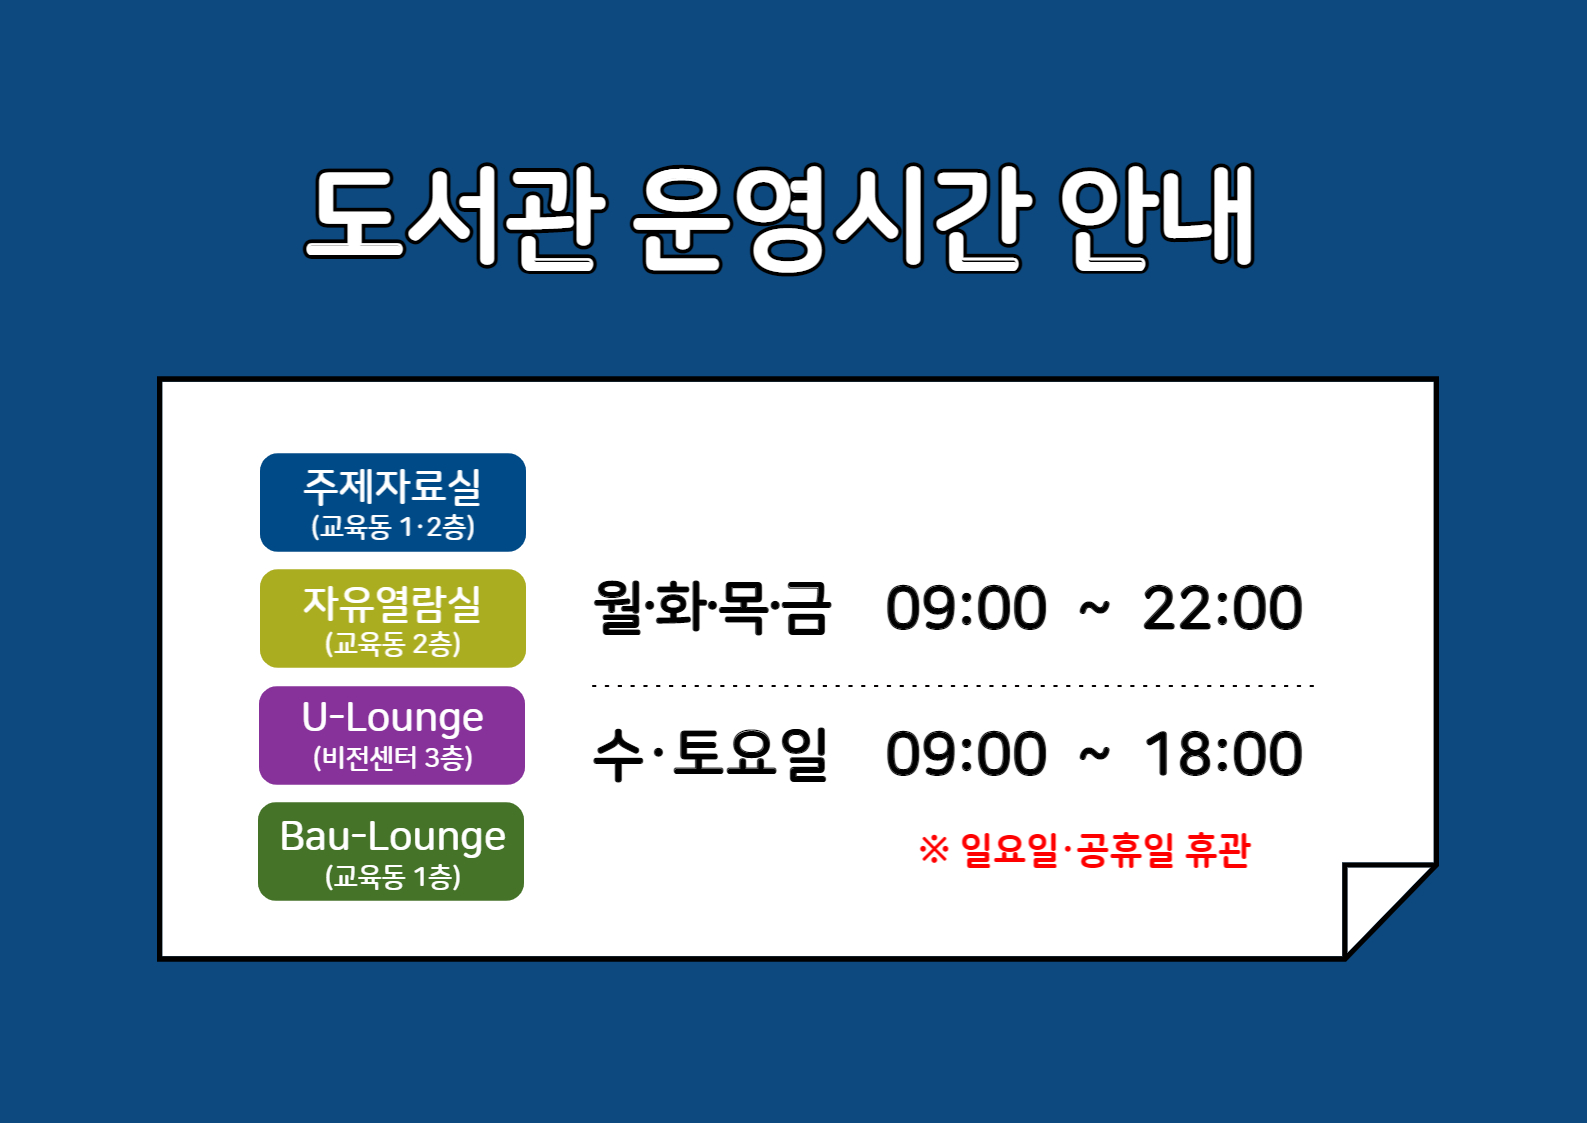 [도서관 이용] 2022-2학기 도서관 운영시간 안내 (8/29~)